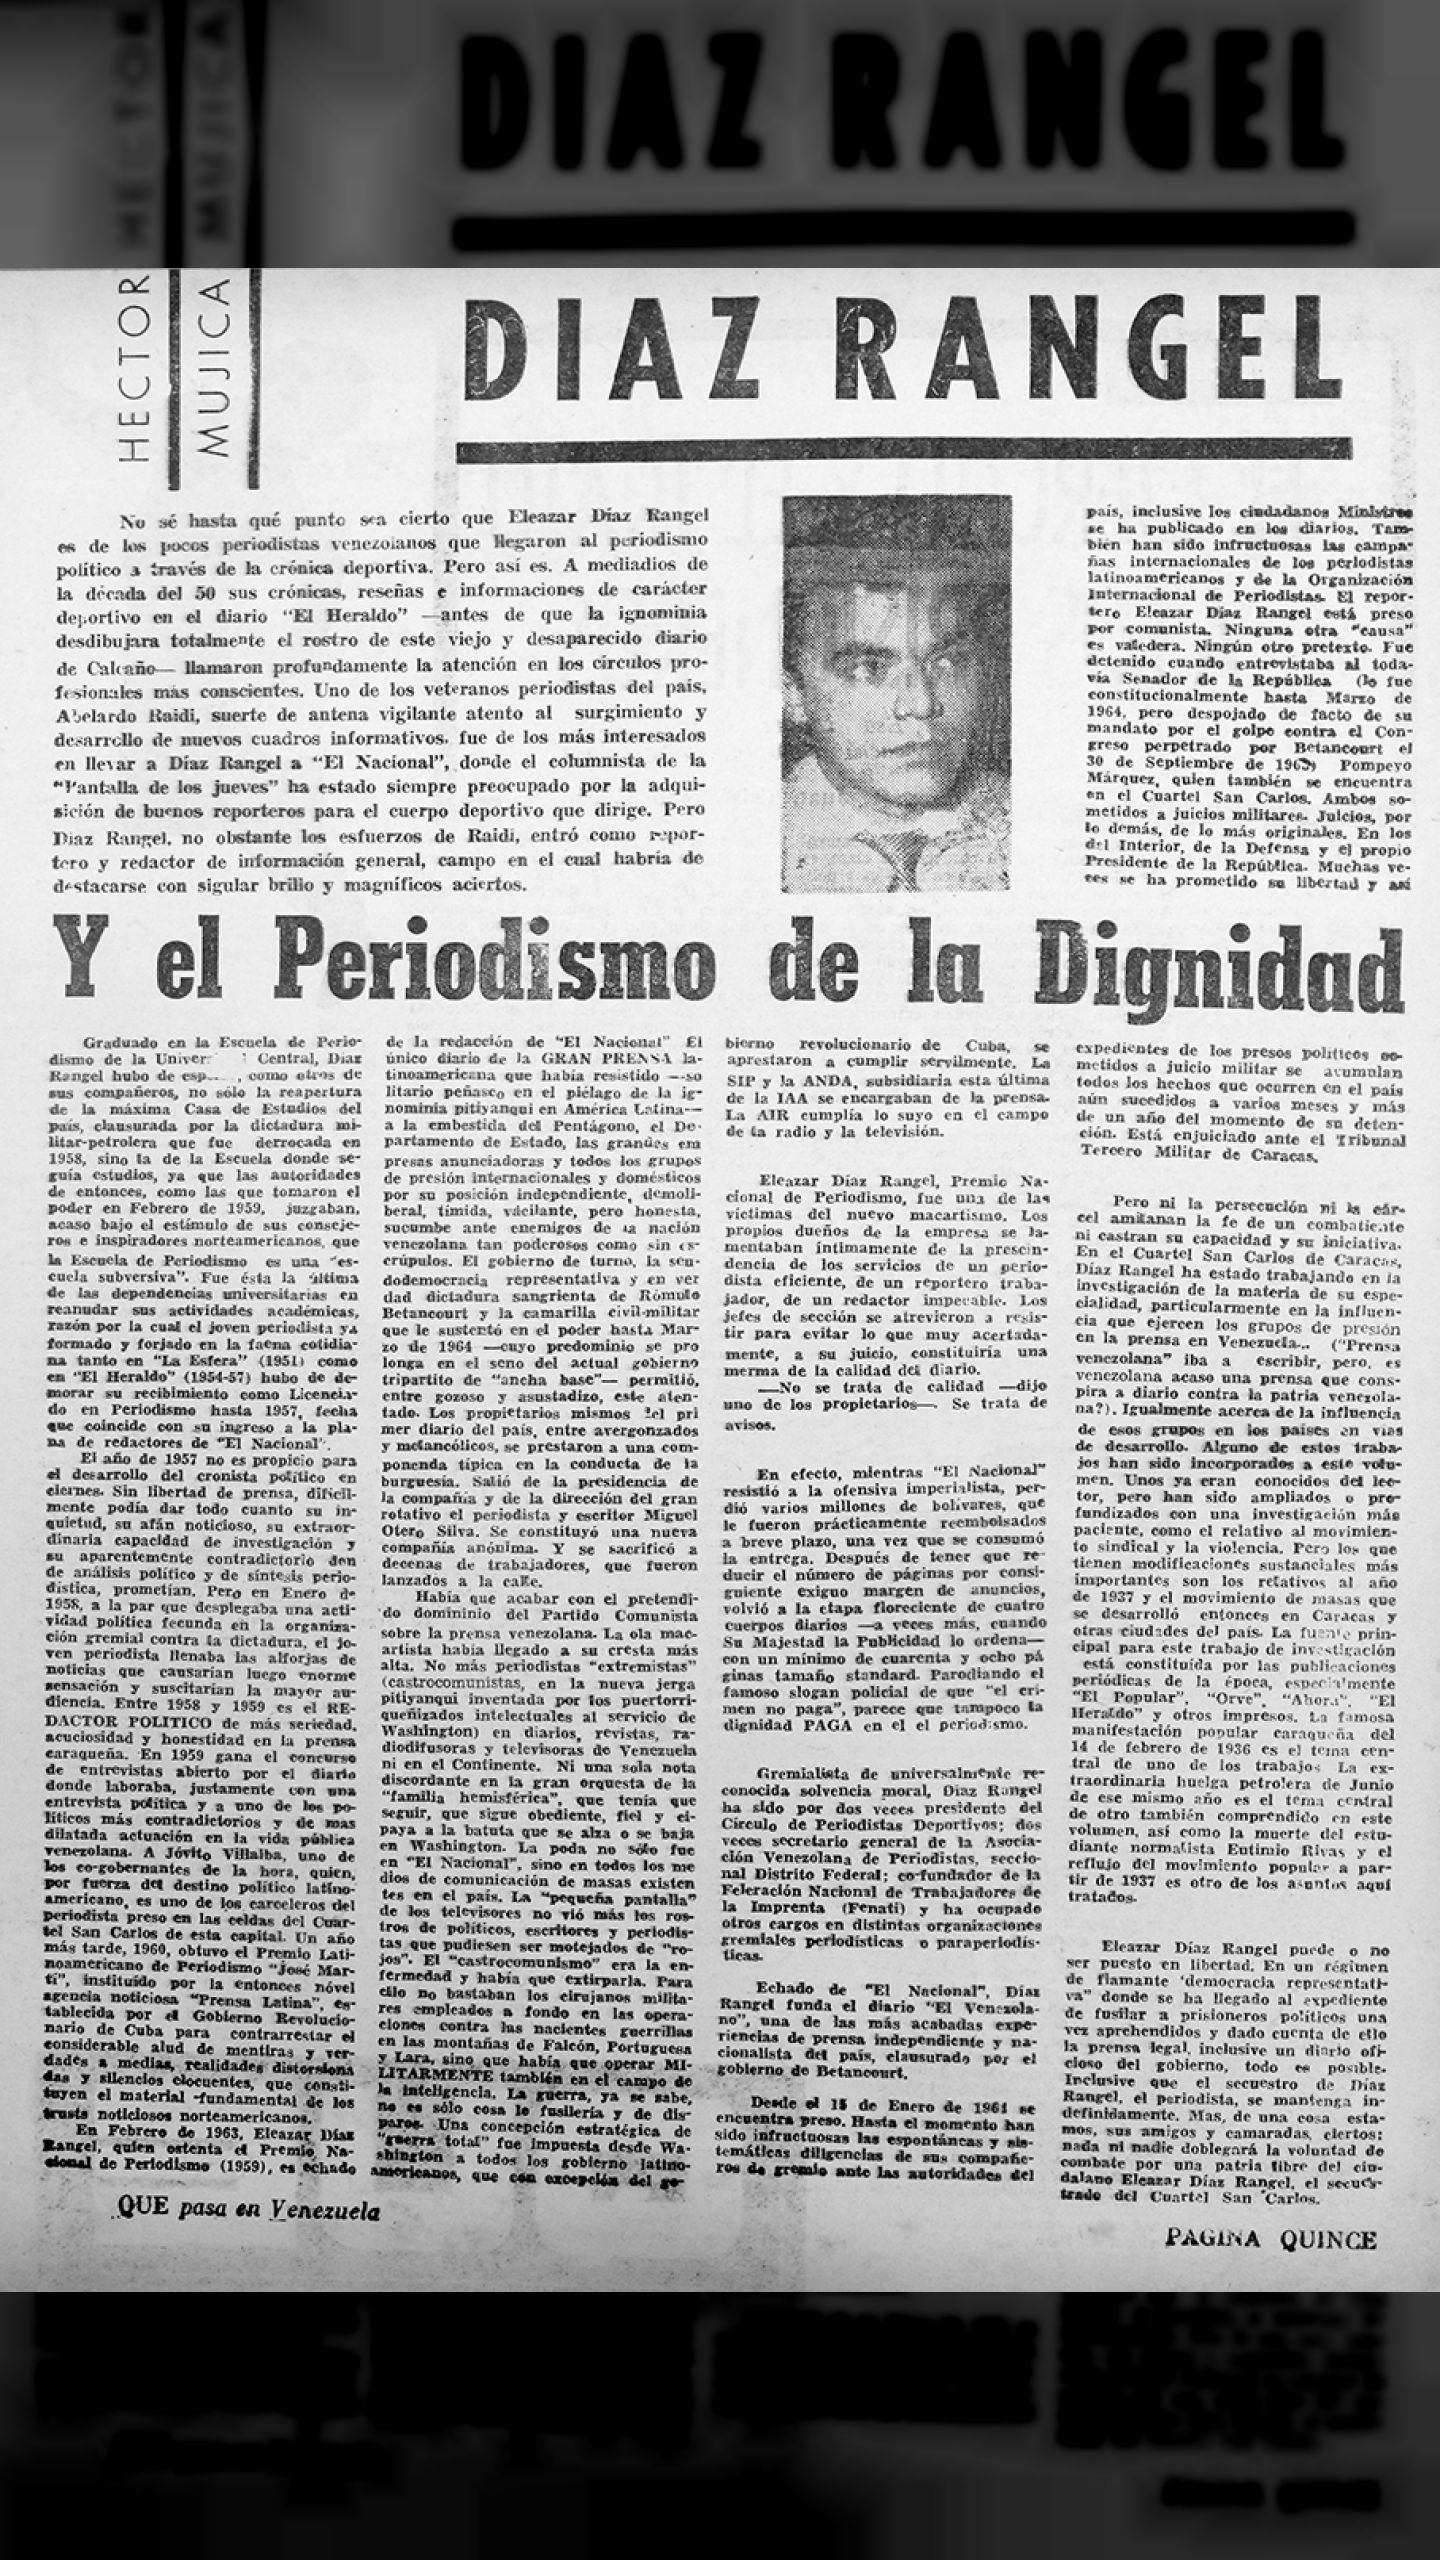 Diaz Rangel y el periodismo de la dignidad (Qué Pasa en Venezuela, 12 de julio de 1965)